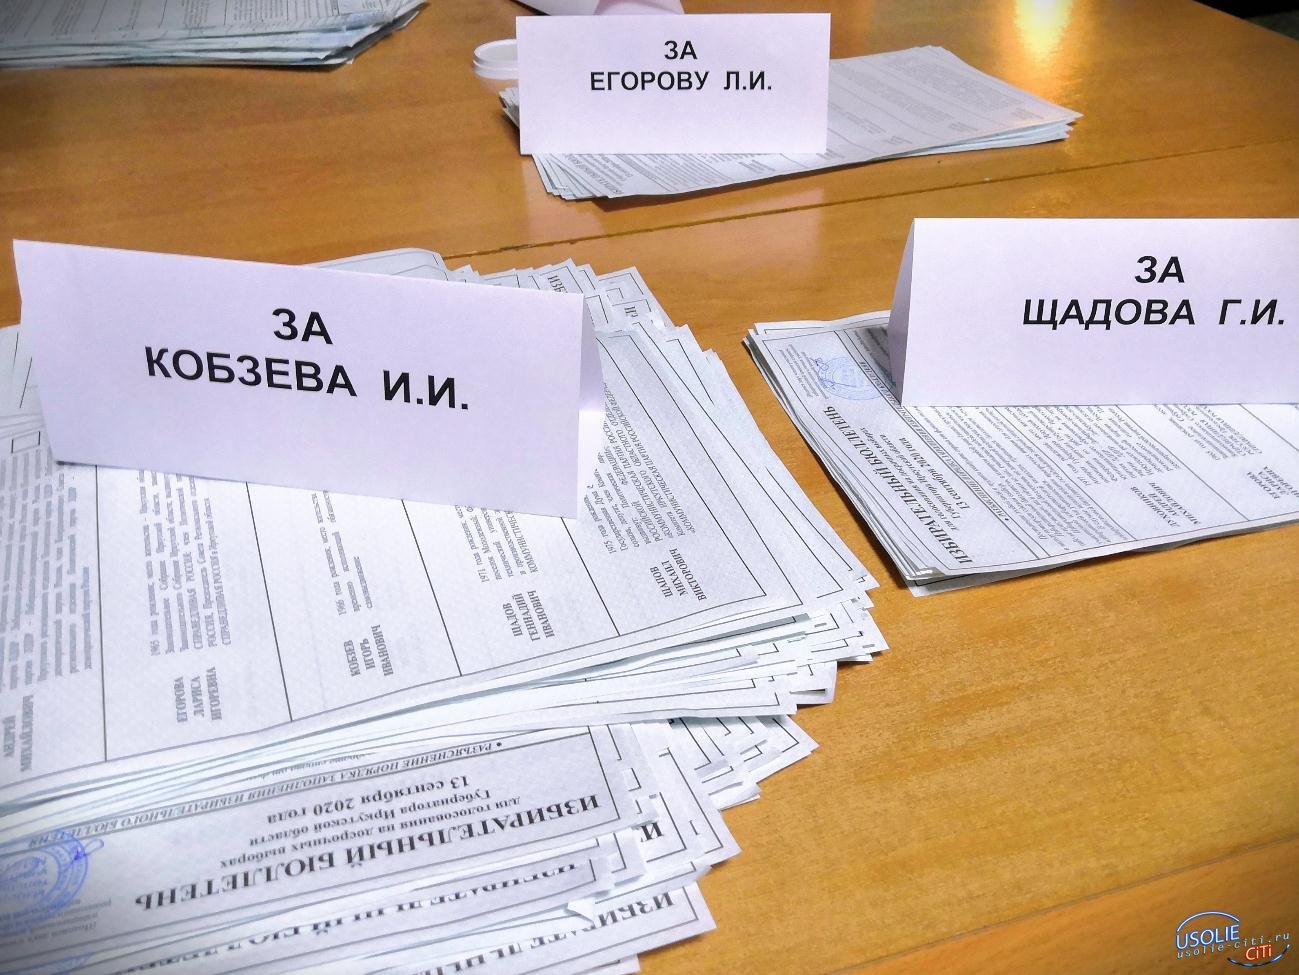  13 600: Усолье проголосовало за Игоря Кобзева